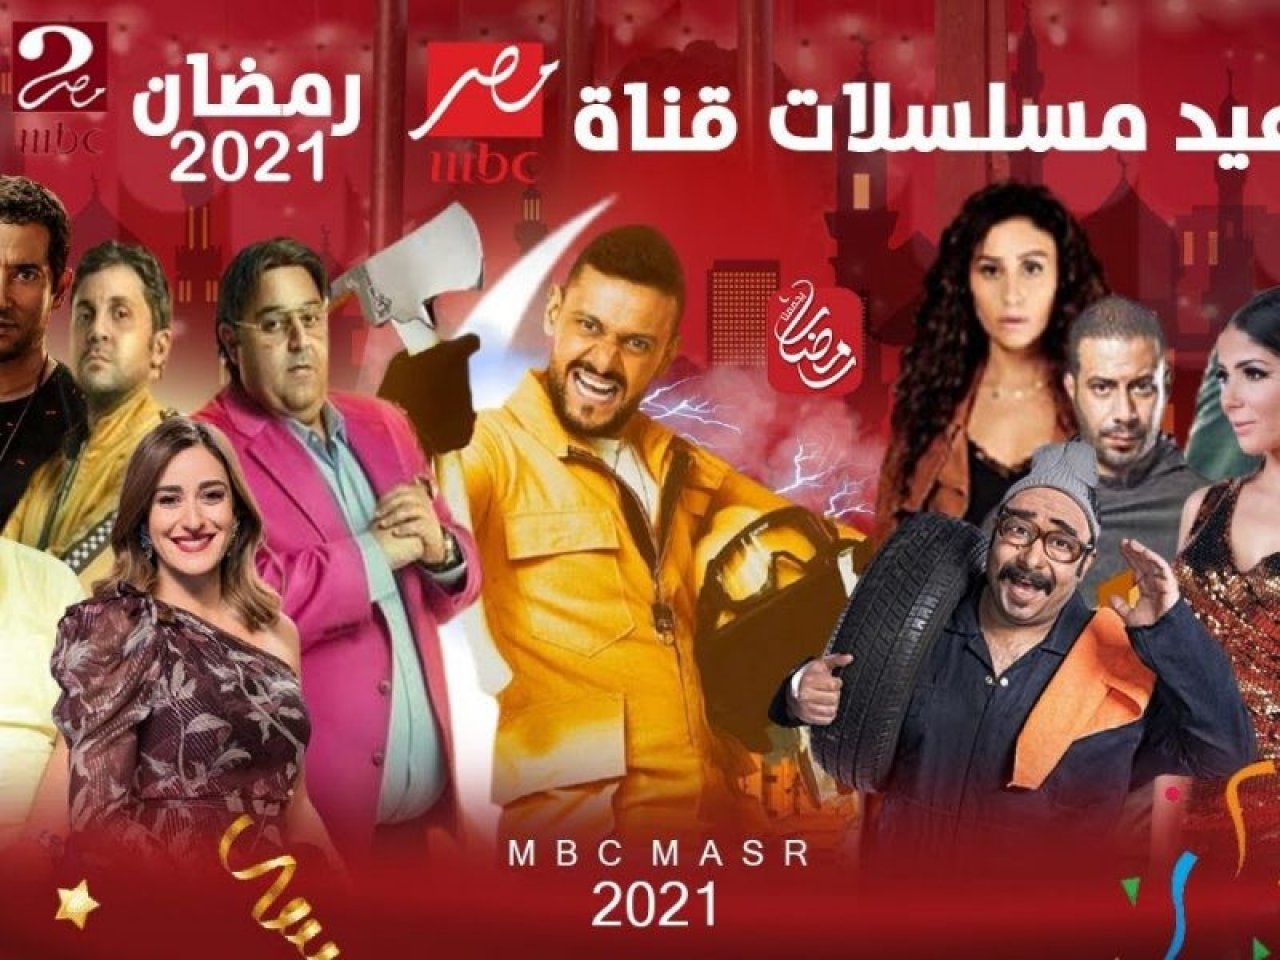 صورة اسماء مسلسلات رمضان 2023 على قناة MBC ومواعيد العرض والاعادة